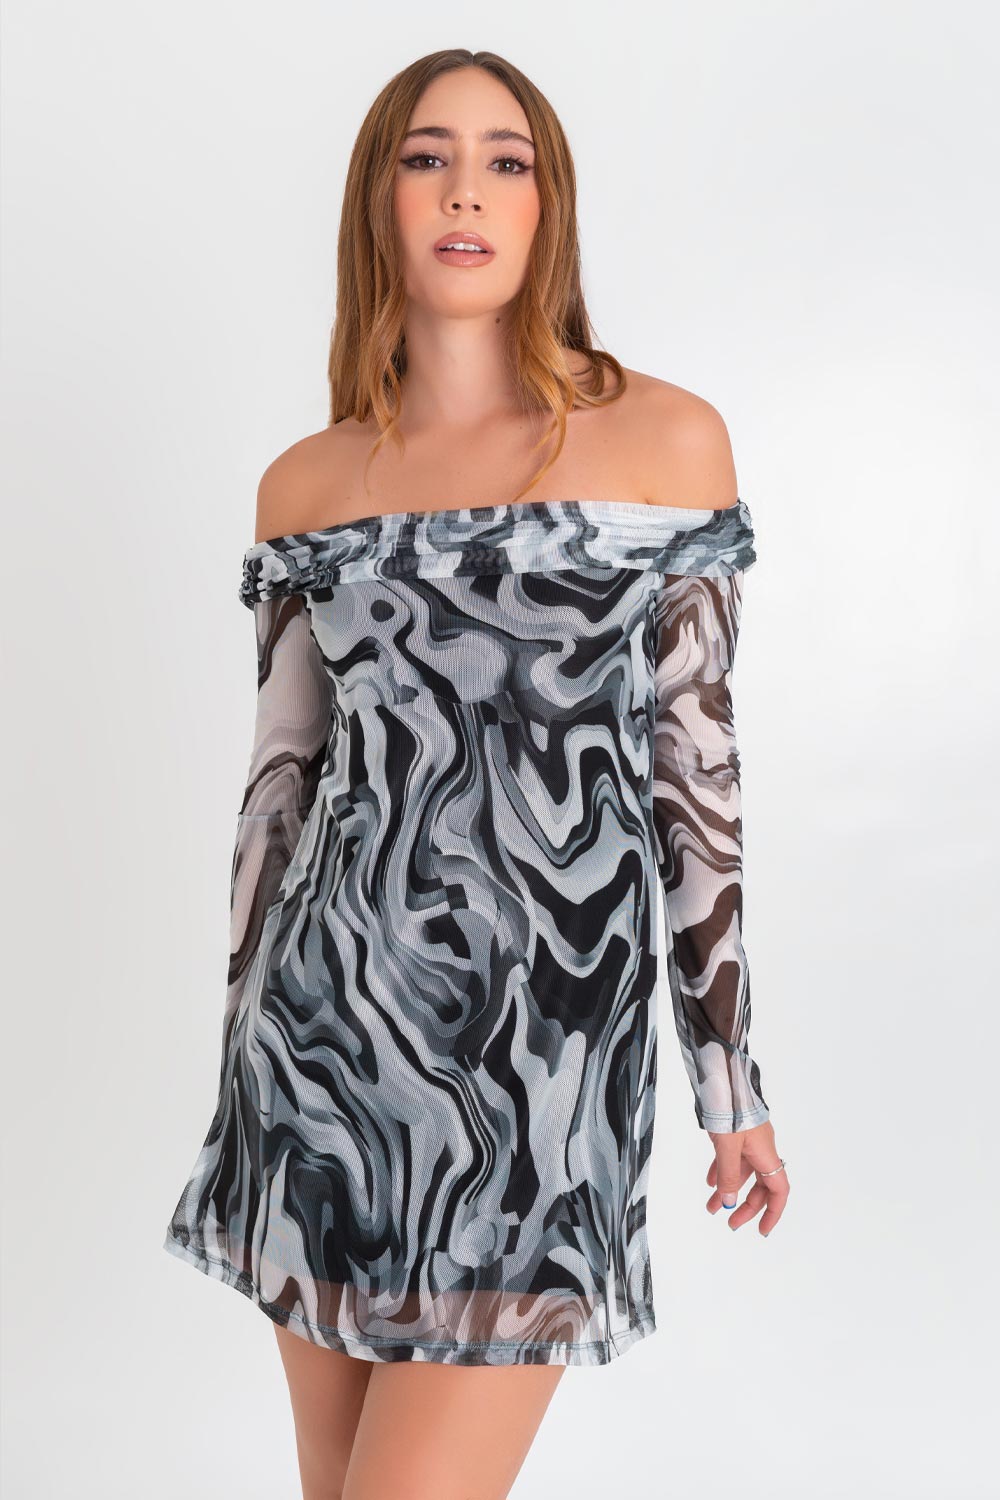 Vestido corto de mesh, estampado abstracto, de corte en a, manga larga en contraste, hombros descubiertos, escote recto con doblez y plisados en borde.